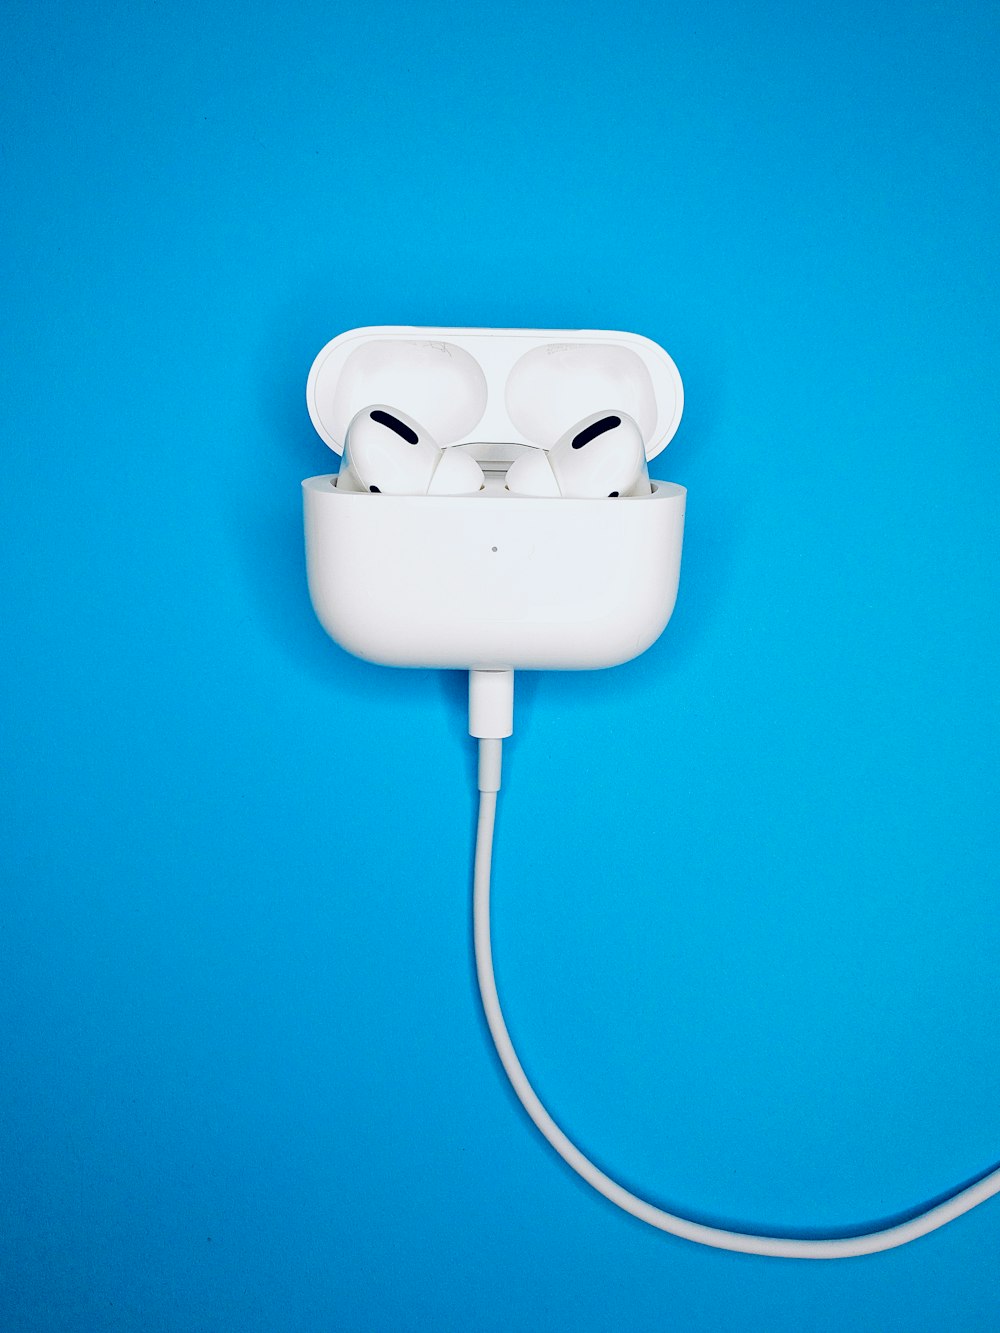 Caricabatterie Apple bianco su presa elettrica bianca